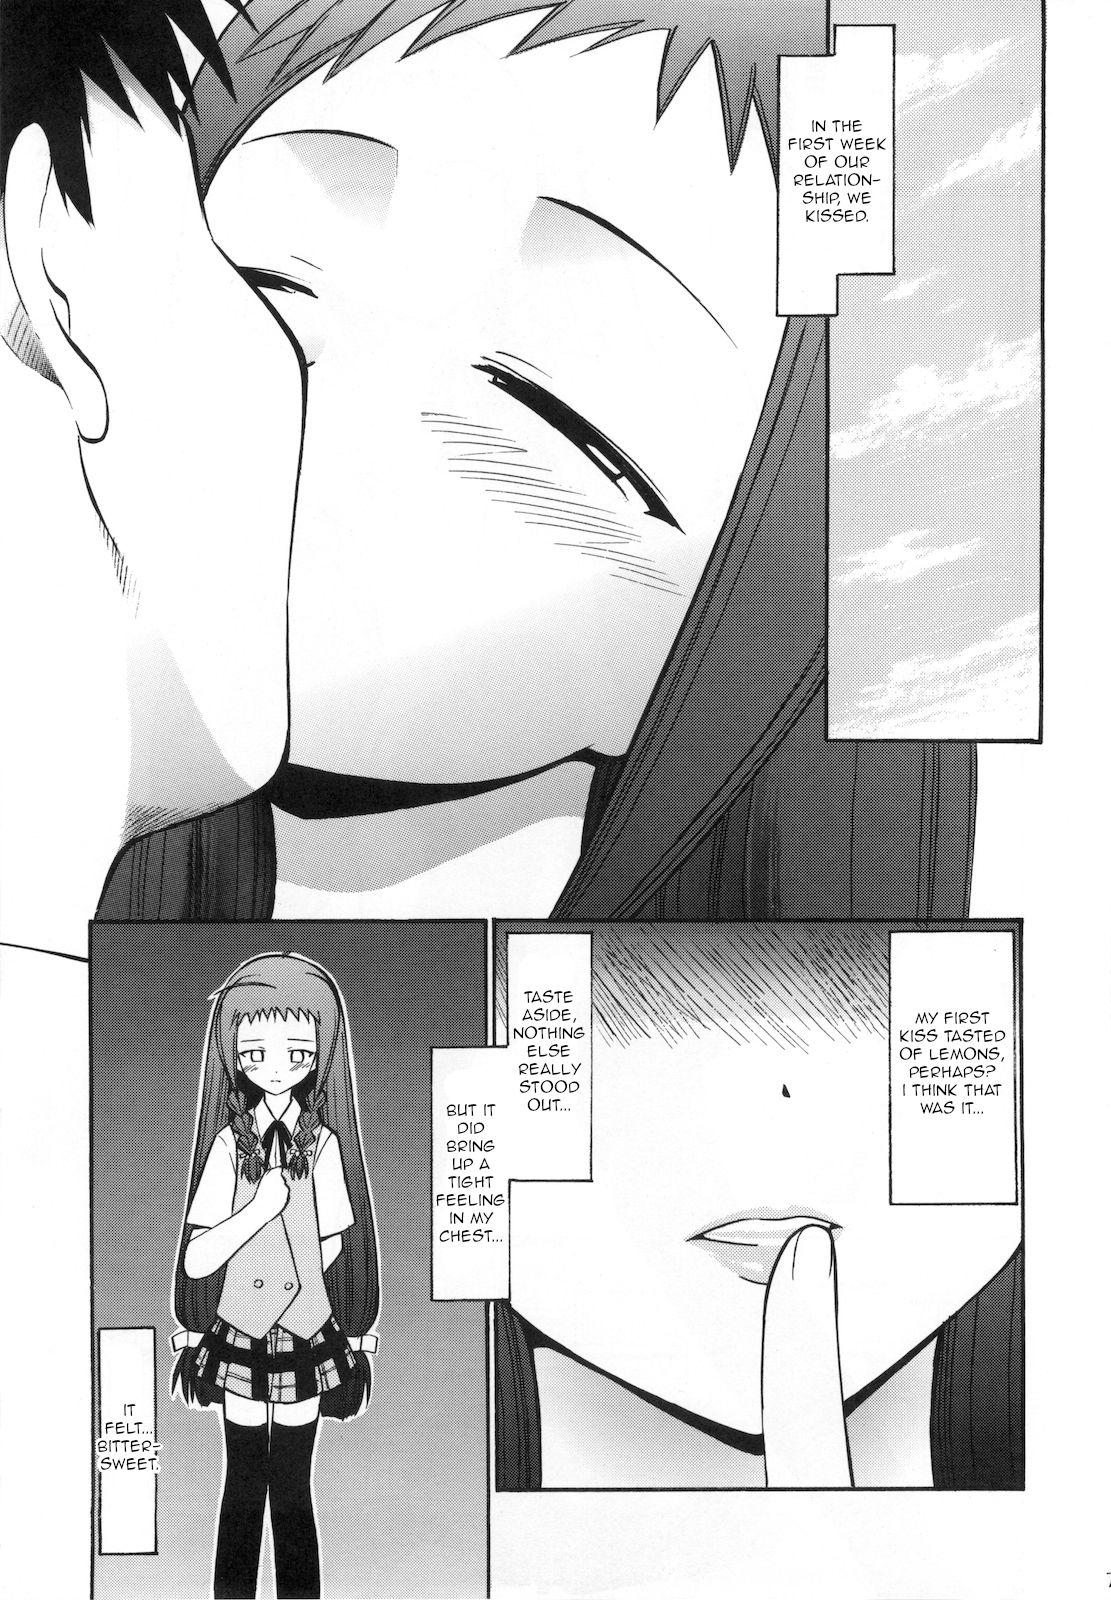 Fisting Yue no Koisuru Heart - Mahou sensei negima Gay Medical - Page 6